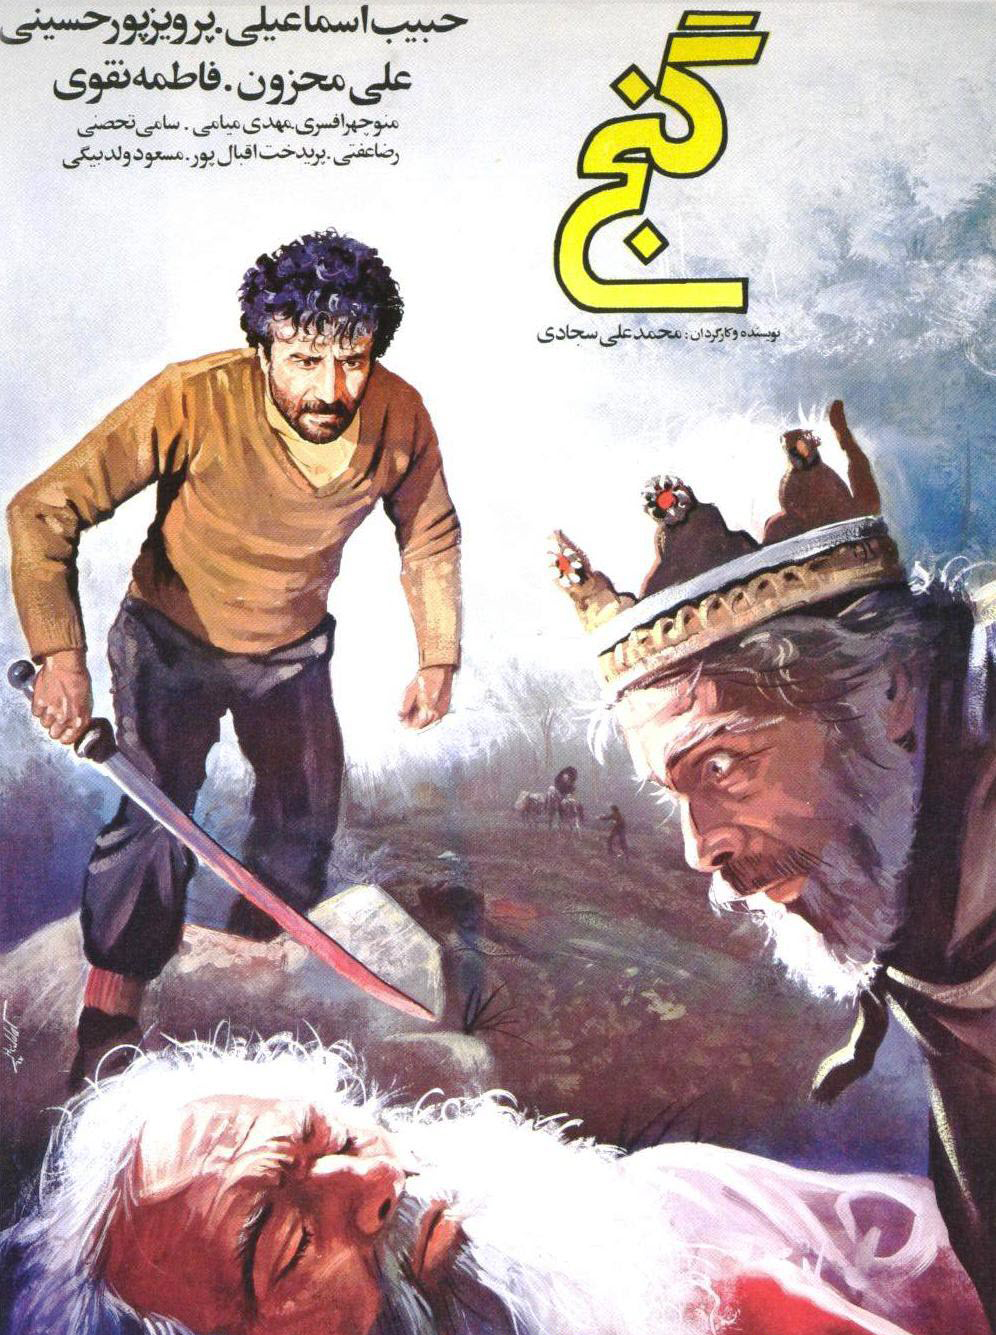 پوستر فیلم سینمایی گنج به کارگردانی محسن قصابیان